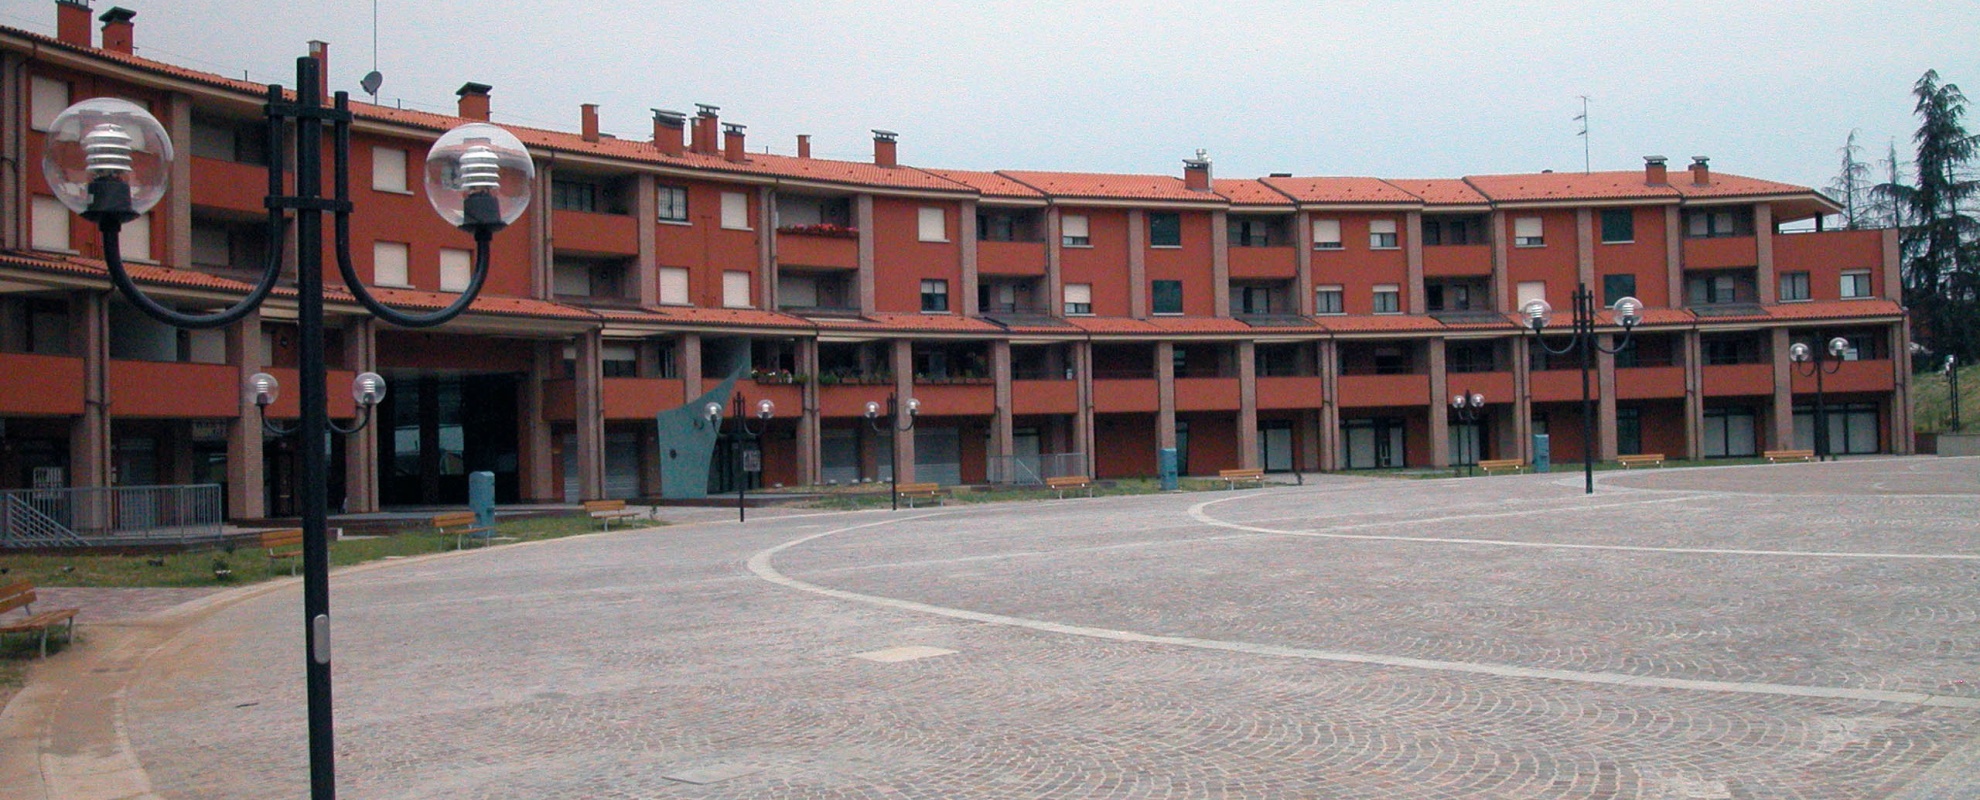 Piazza di Rastignano (Pianoro)